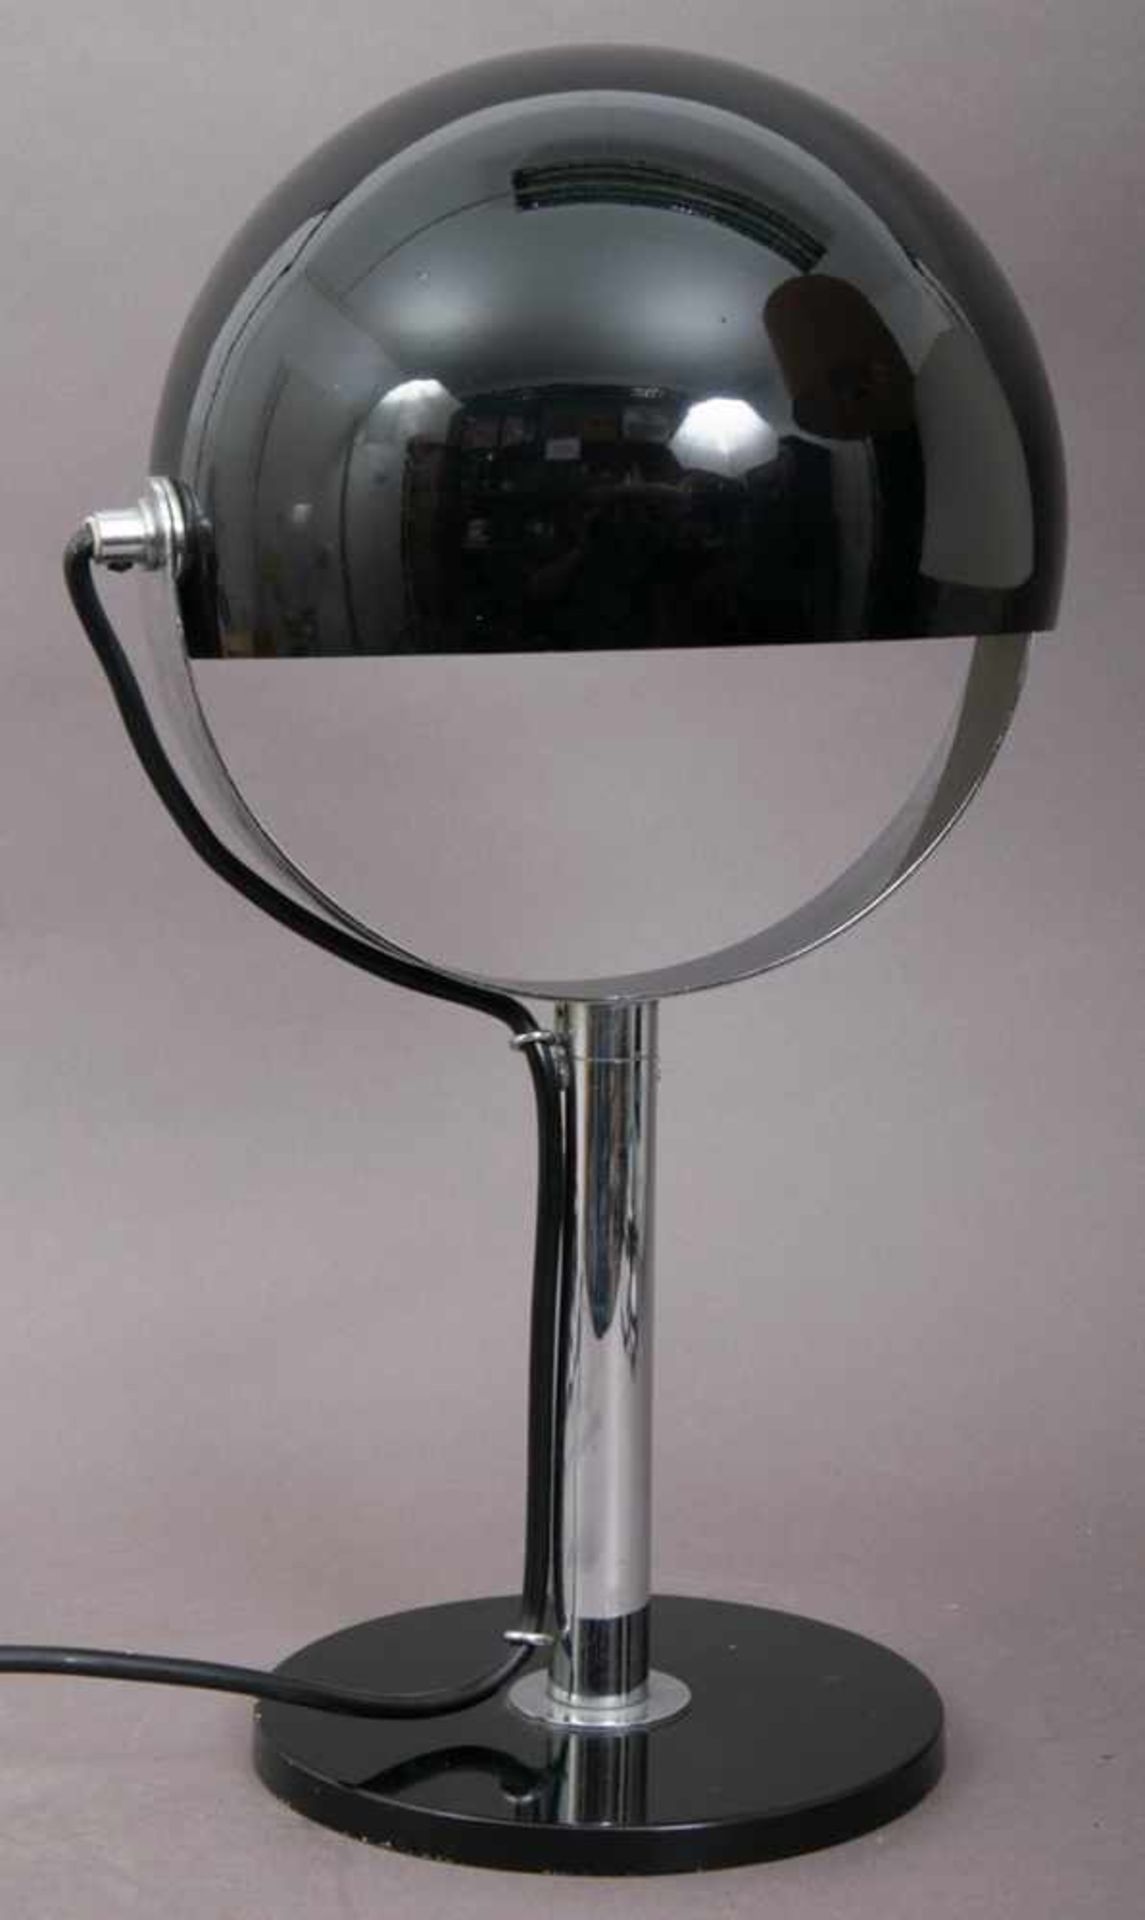 Klassische Schreibtischlampe/Tischlampe.Schwarz lackiertes & verchromtes Metall, drehbarer, runder